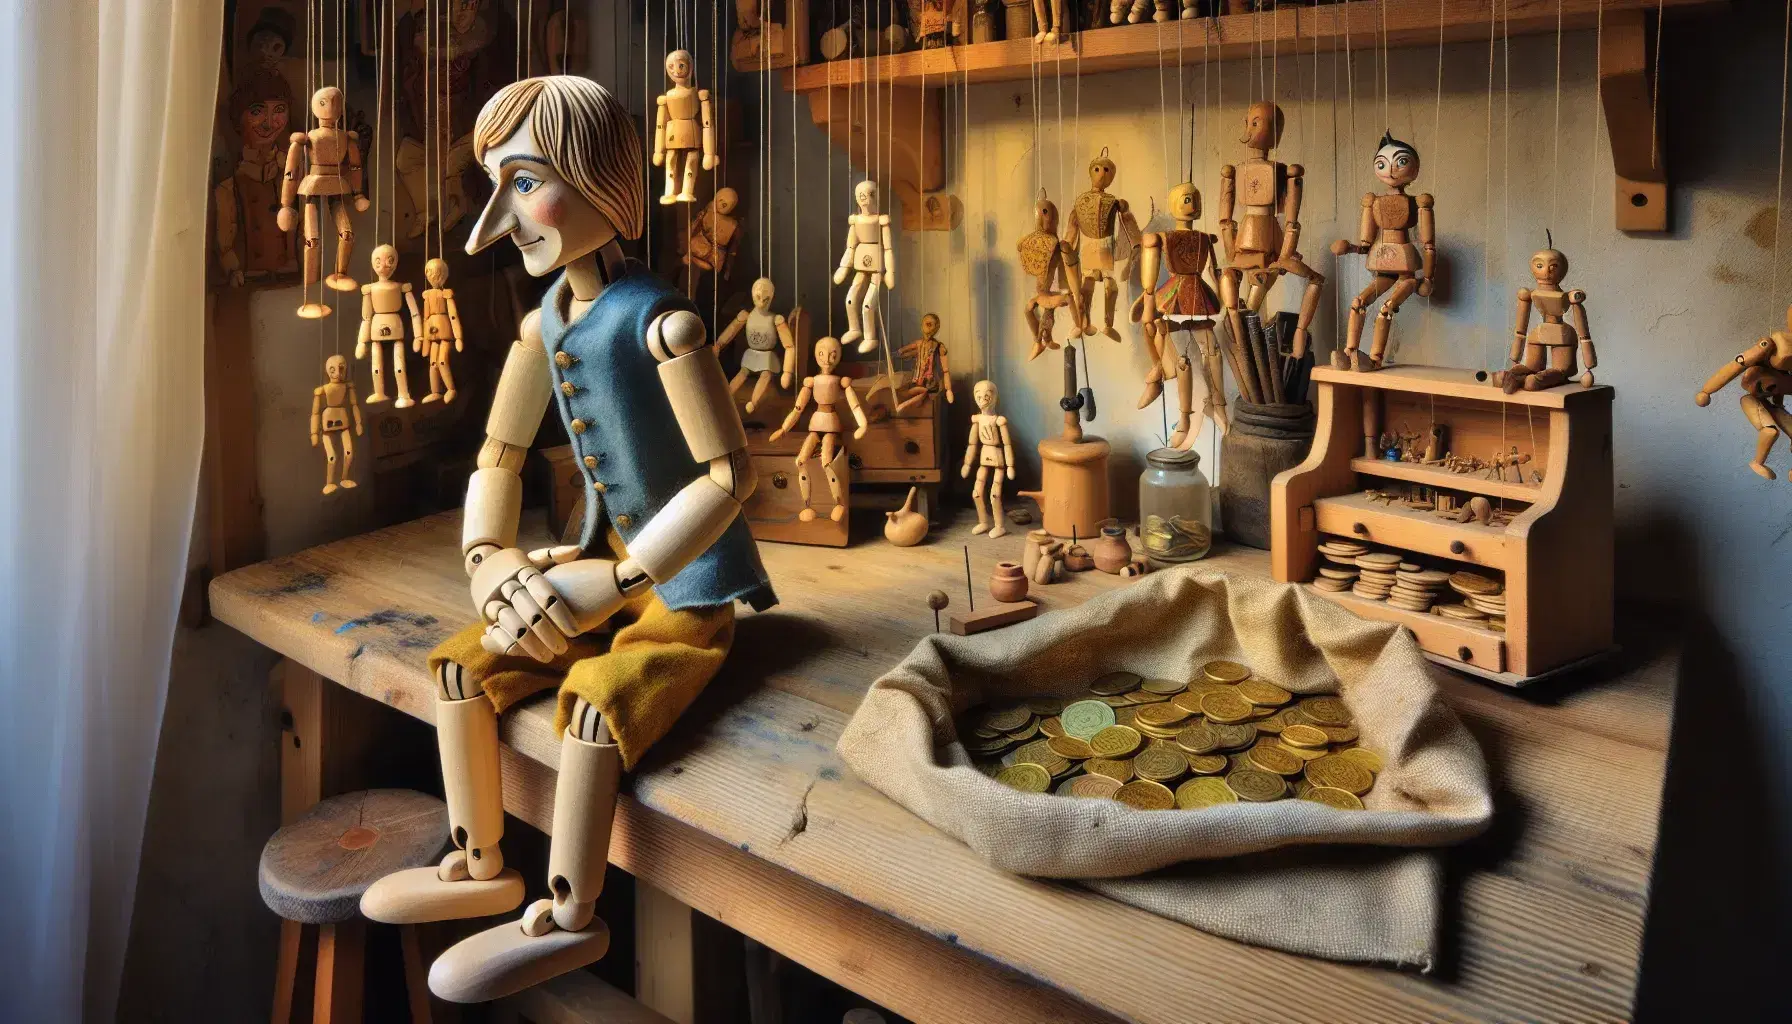 Burattino di legno con giacca blu e pantaloni gialli seduto su banco da lavoro, circondato da marionette e sacchetto con monete d'oro.